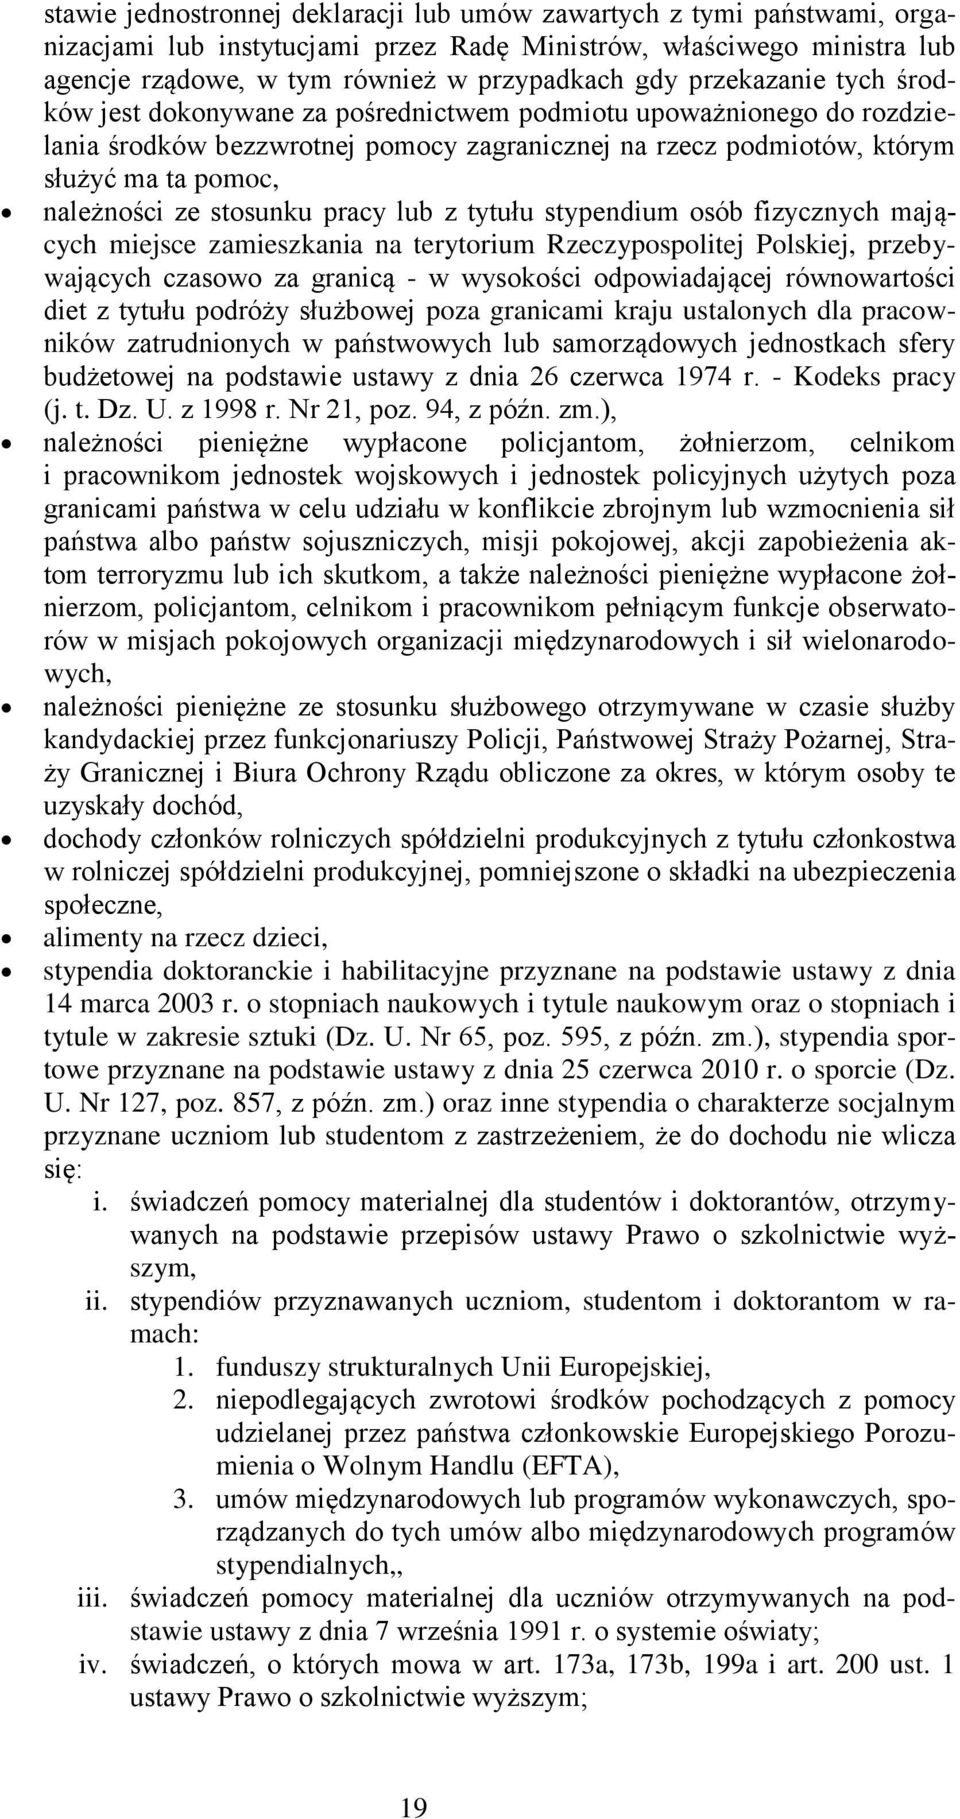 stosunku pracy lub z tytułu stypendium osób fizycznych mających miejsce zamieszkania na terytorium Rzeczypospolitej Polskiej, przebywających czasowo za granicą - w wysokości odpowiadającej